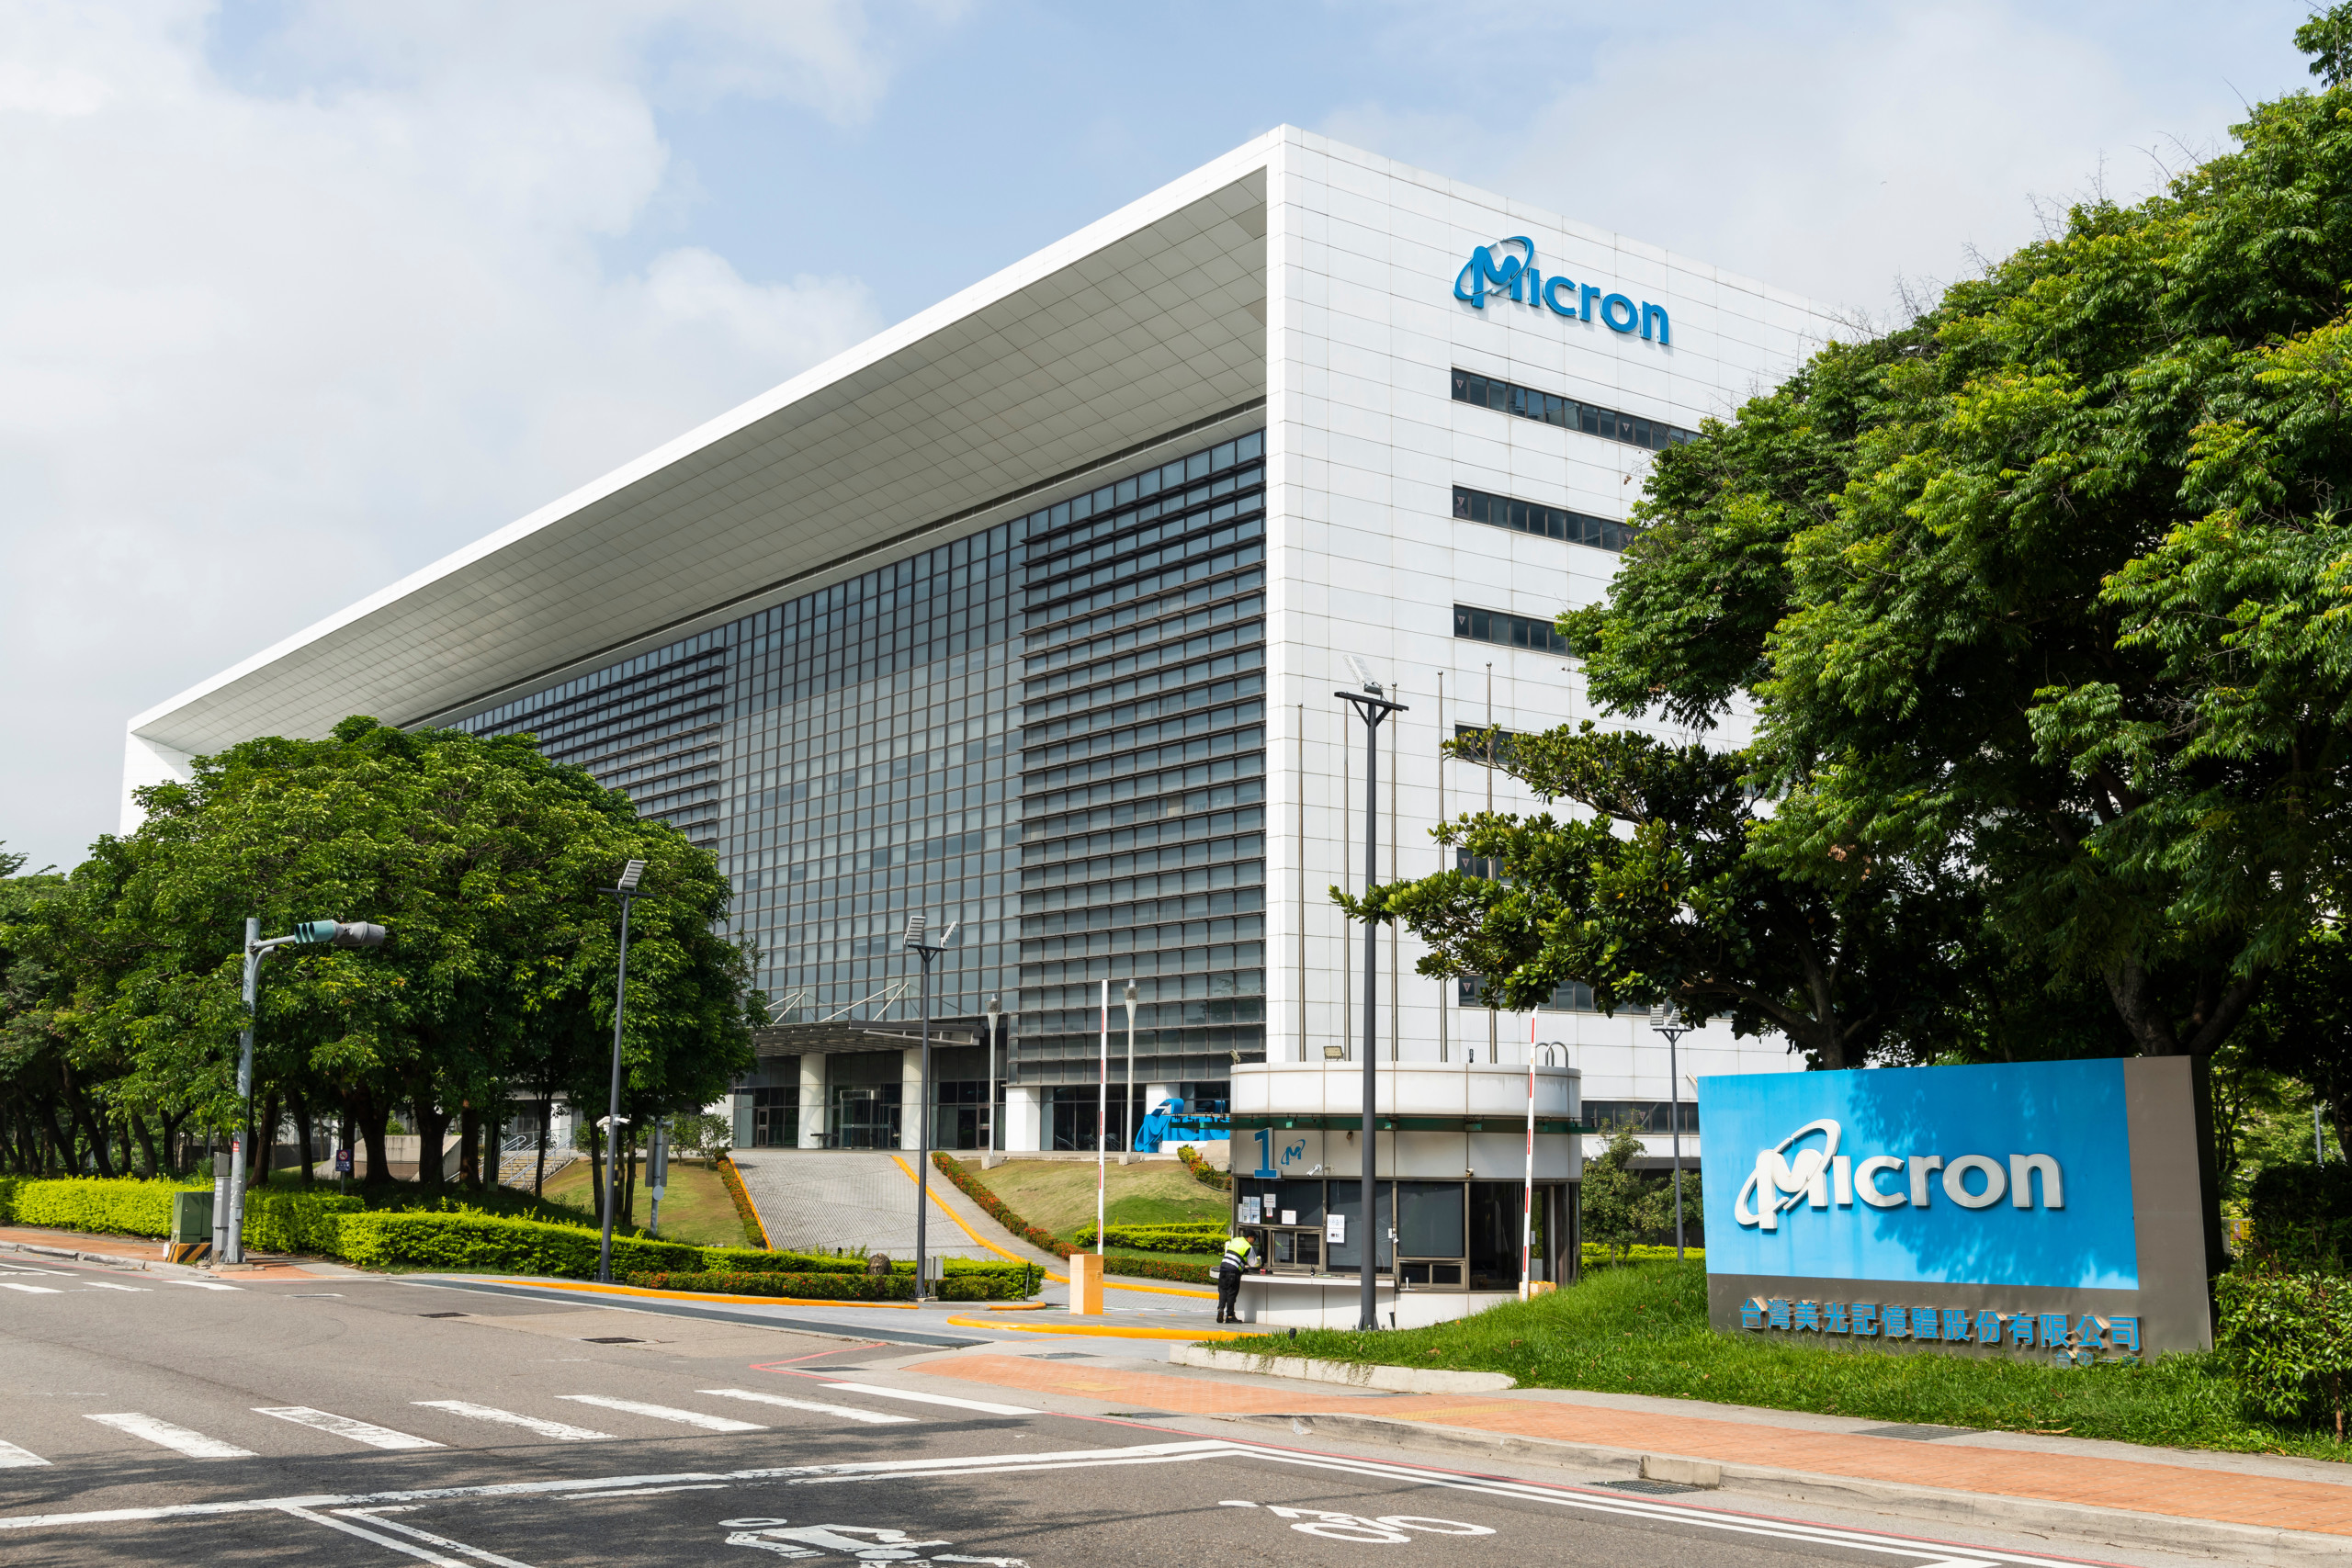 Micron-Umsatz hat sich aufgrund des China-Verbots halbiert